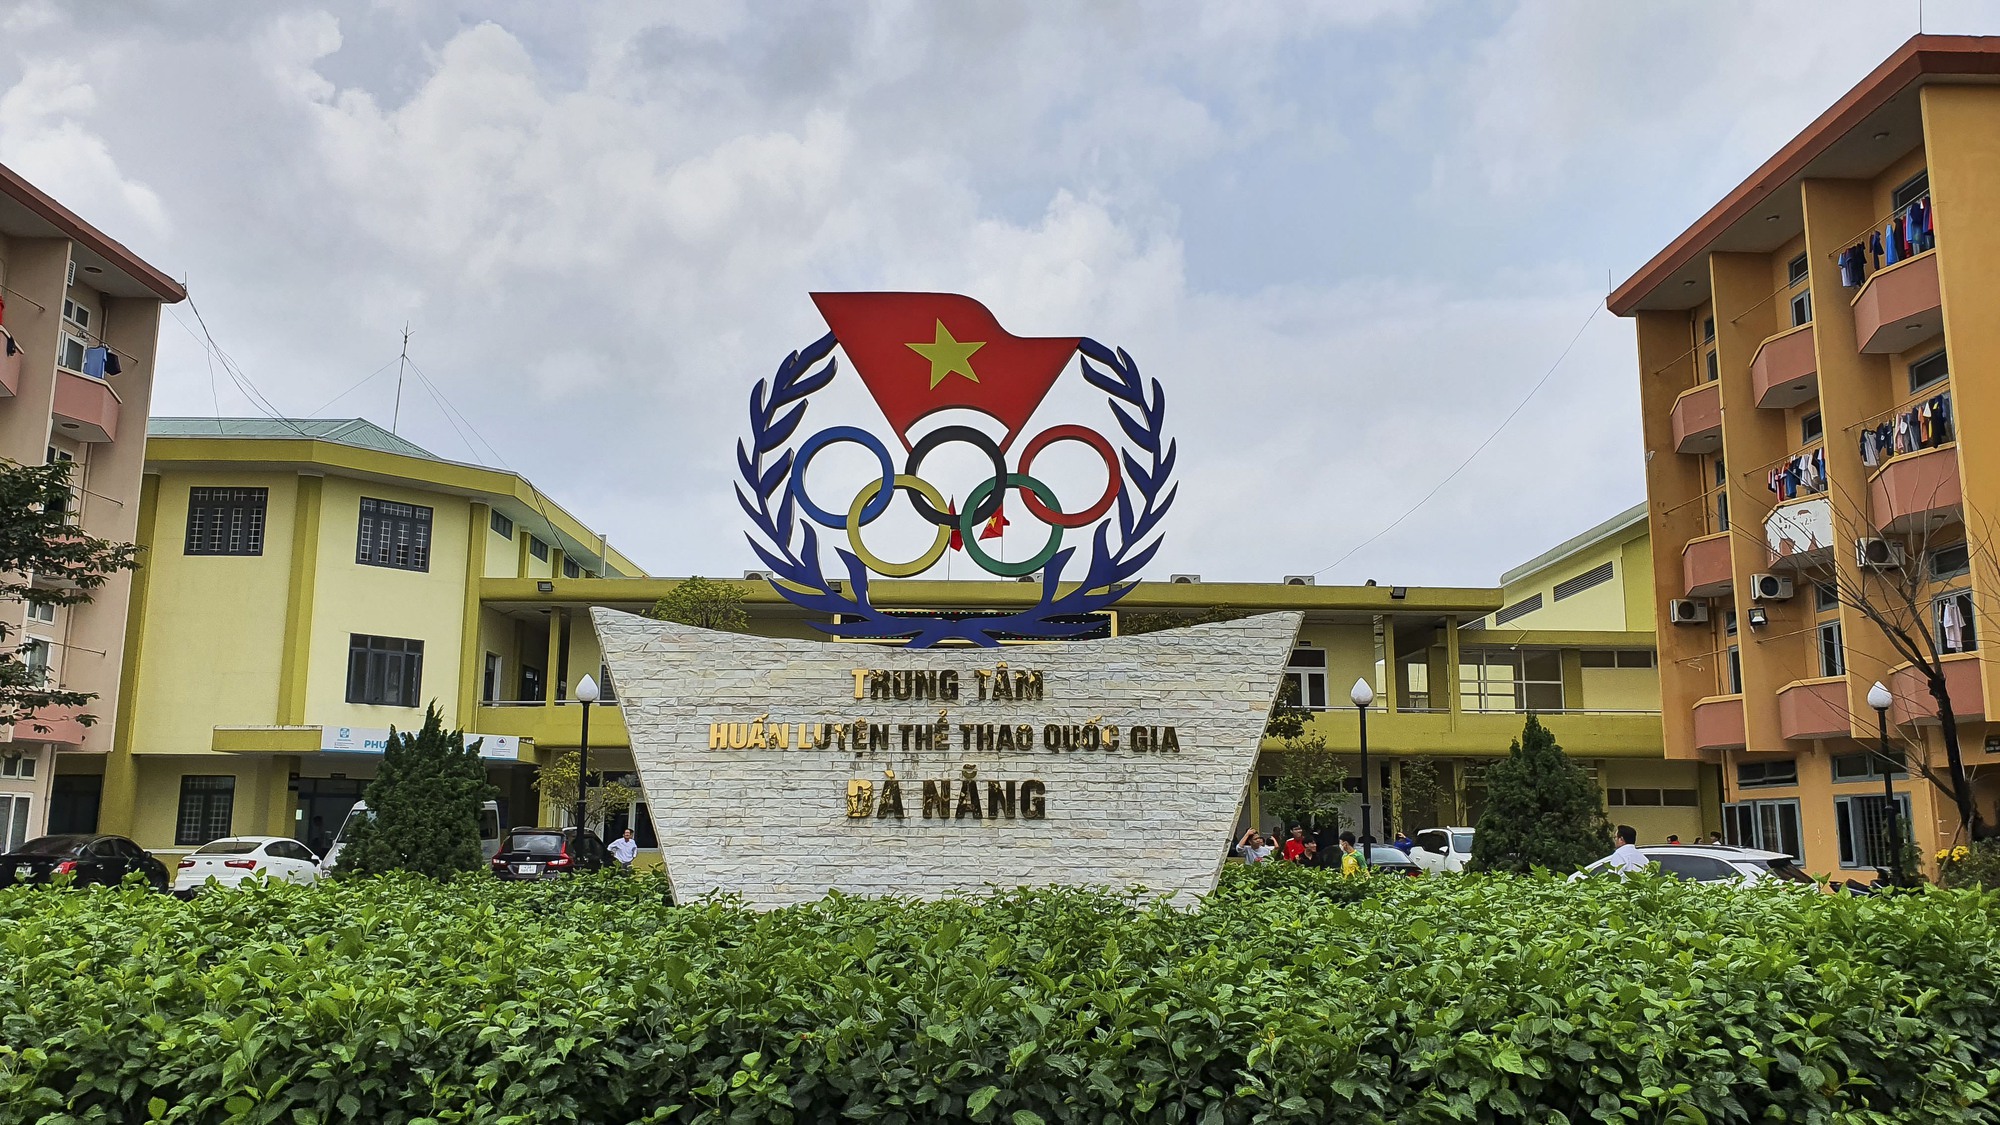 Thứ trưởng Hoàng Đạo Cương kiểm tra công tác chuẩn bị cho SEA Game 32 tại Trung tâm Huấn luyện thể thao quốc gia Đà Nẵng - Ảnh 14.